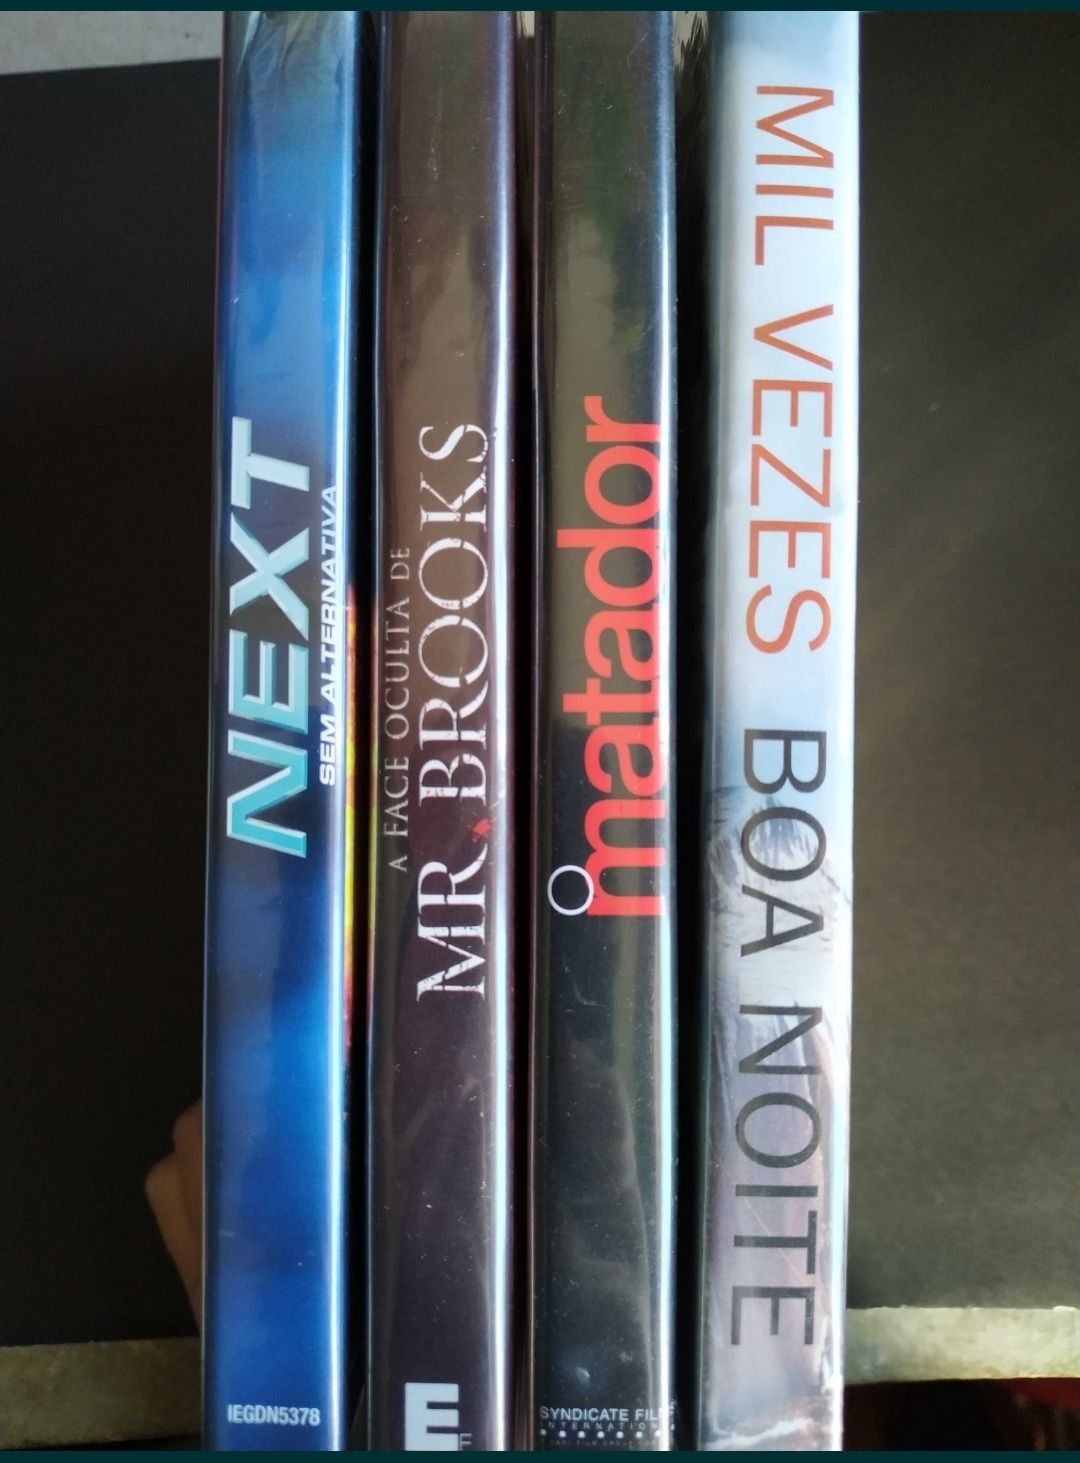 4 Filmes em DVD - novos, com embalagem (1,5€ cada)